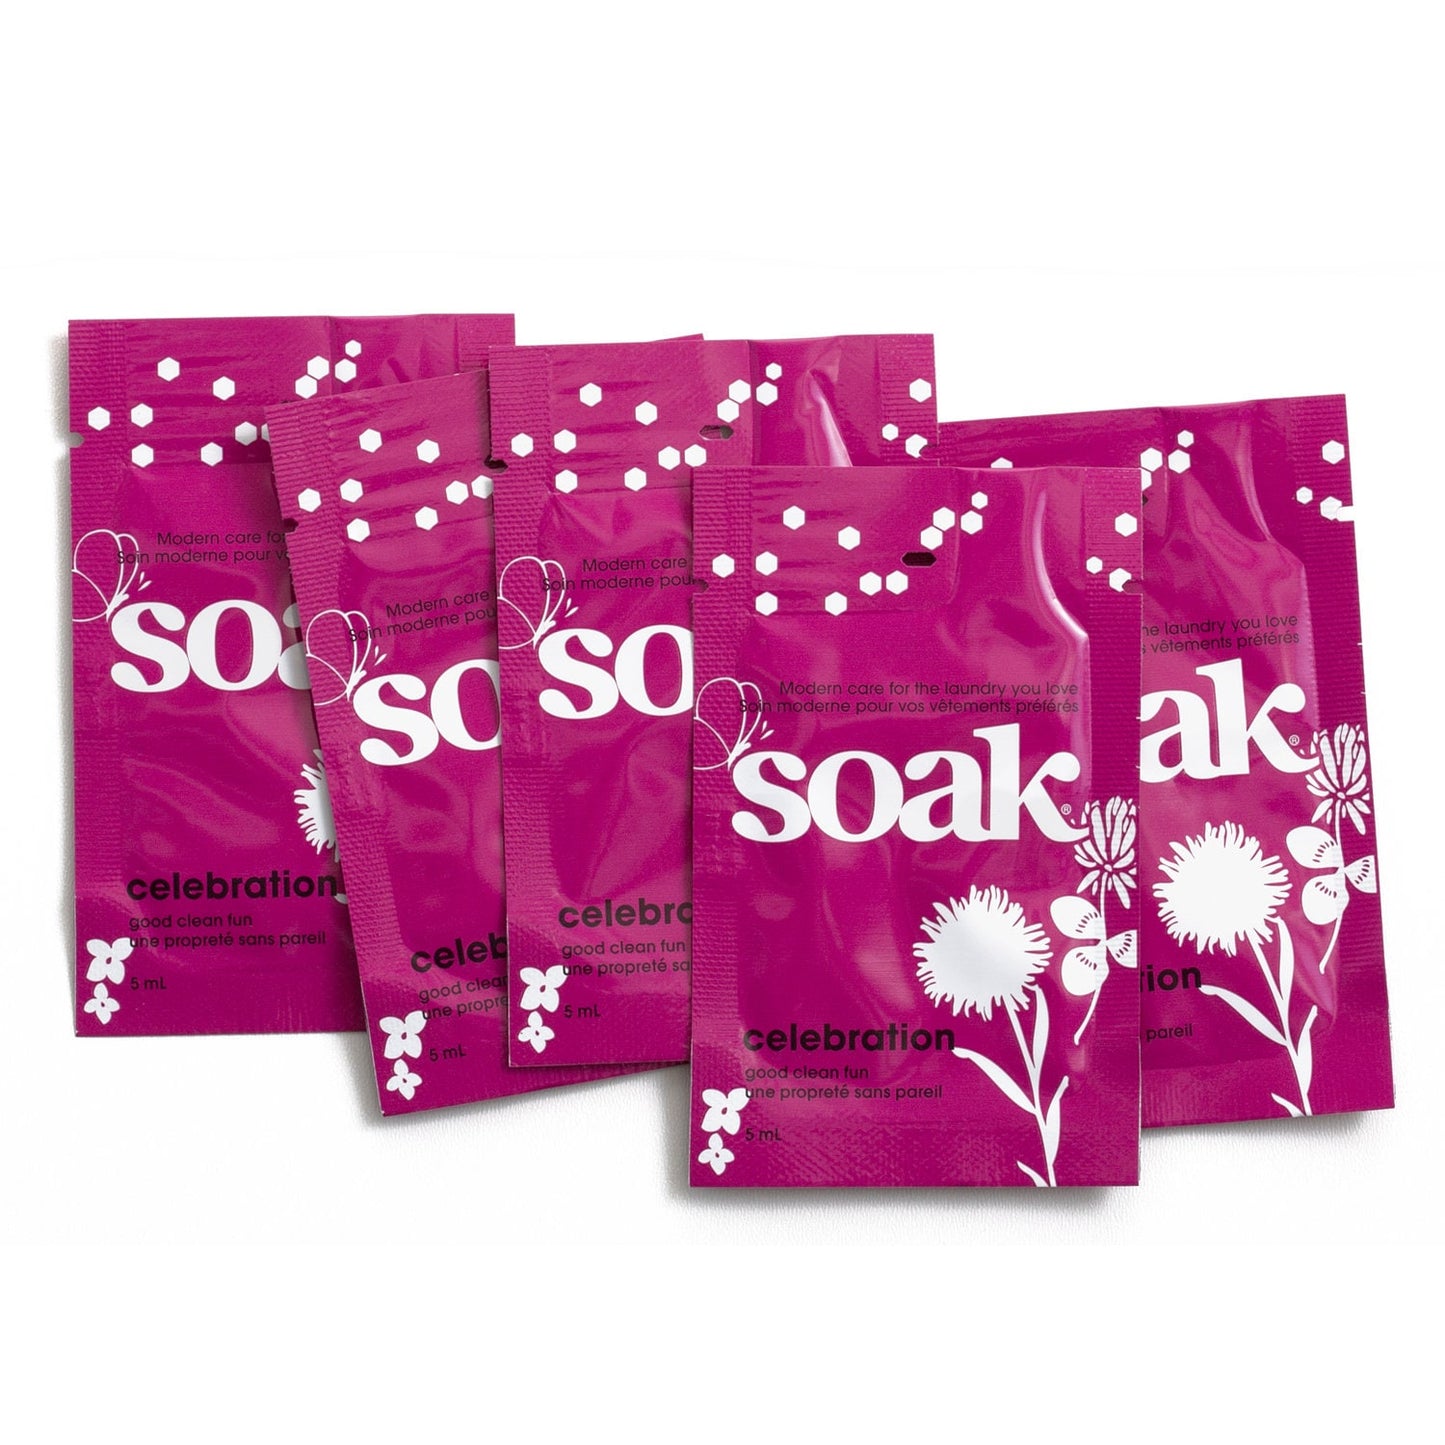 Soak Laundry Soap - Sample Size - Travel Pack - Mini